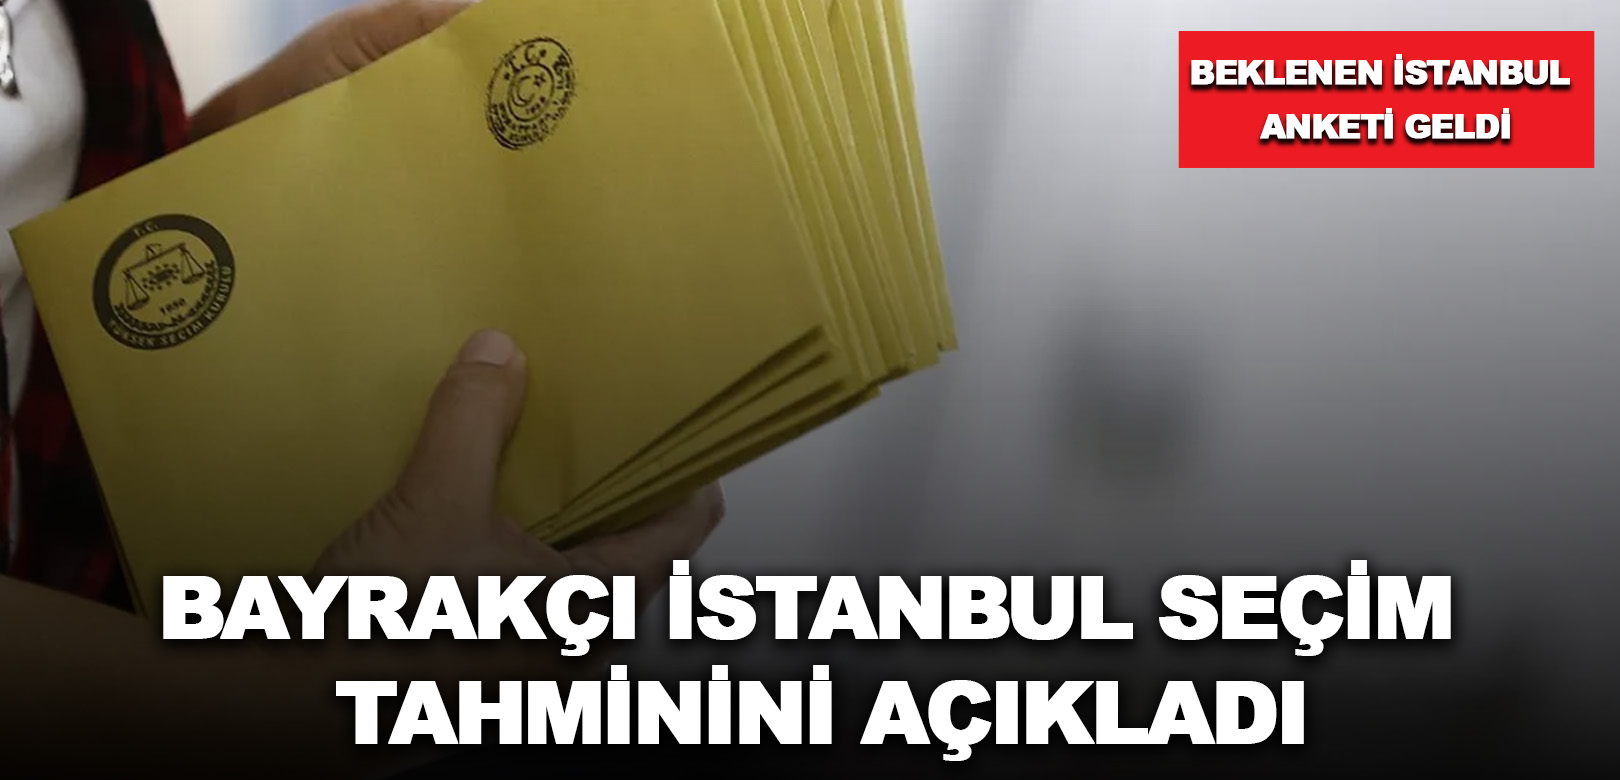 Merakla beklenen İstanbul anketi geldi: Bayrakçı, İstanbul seçim tahminini açıkladı